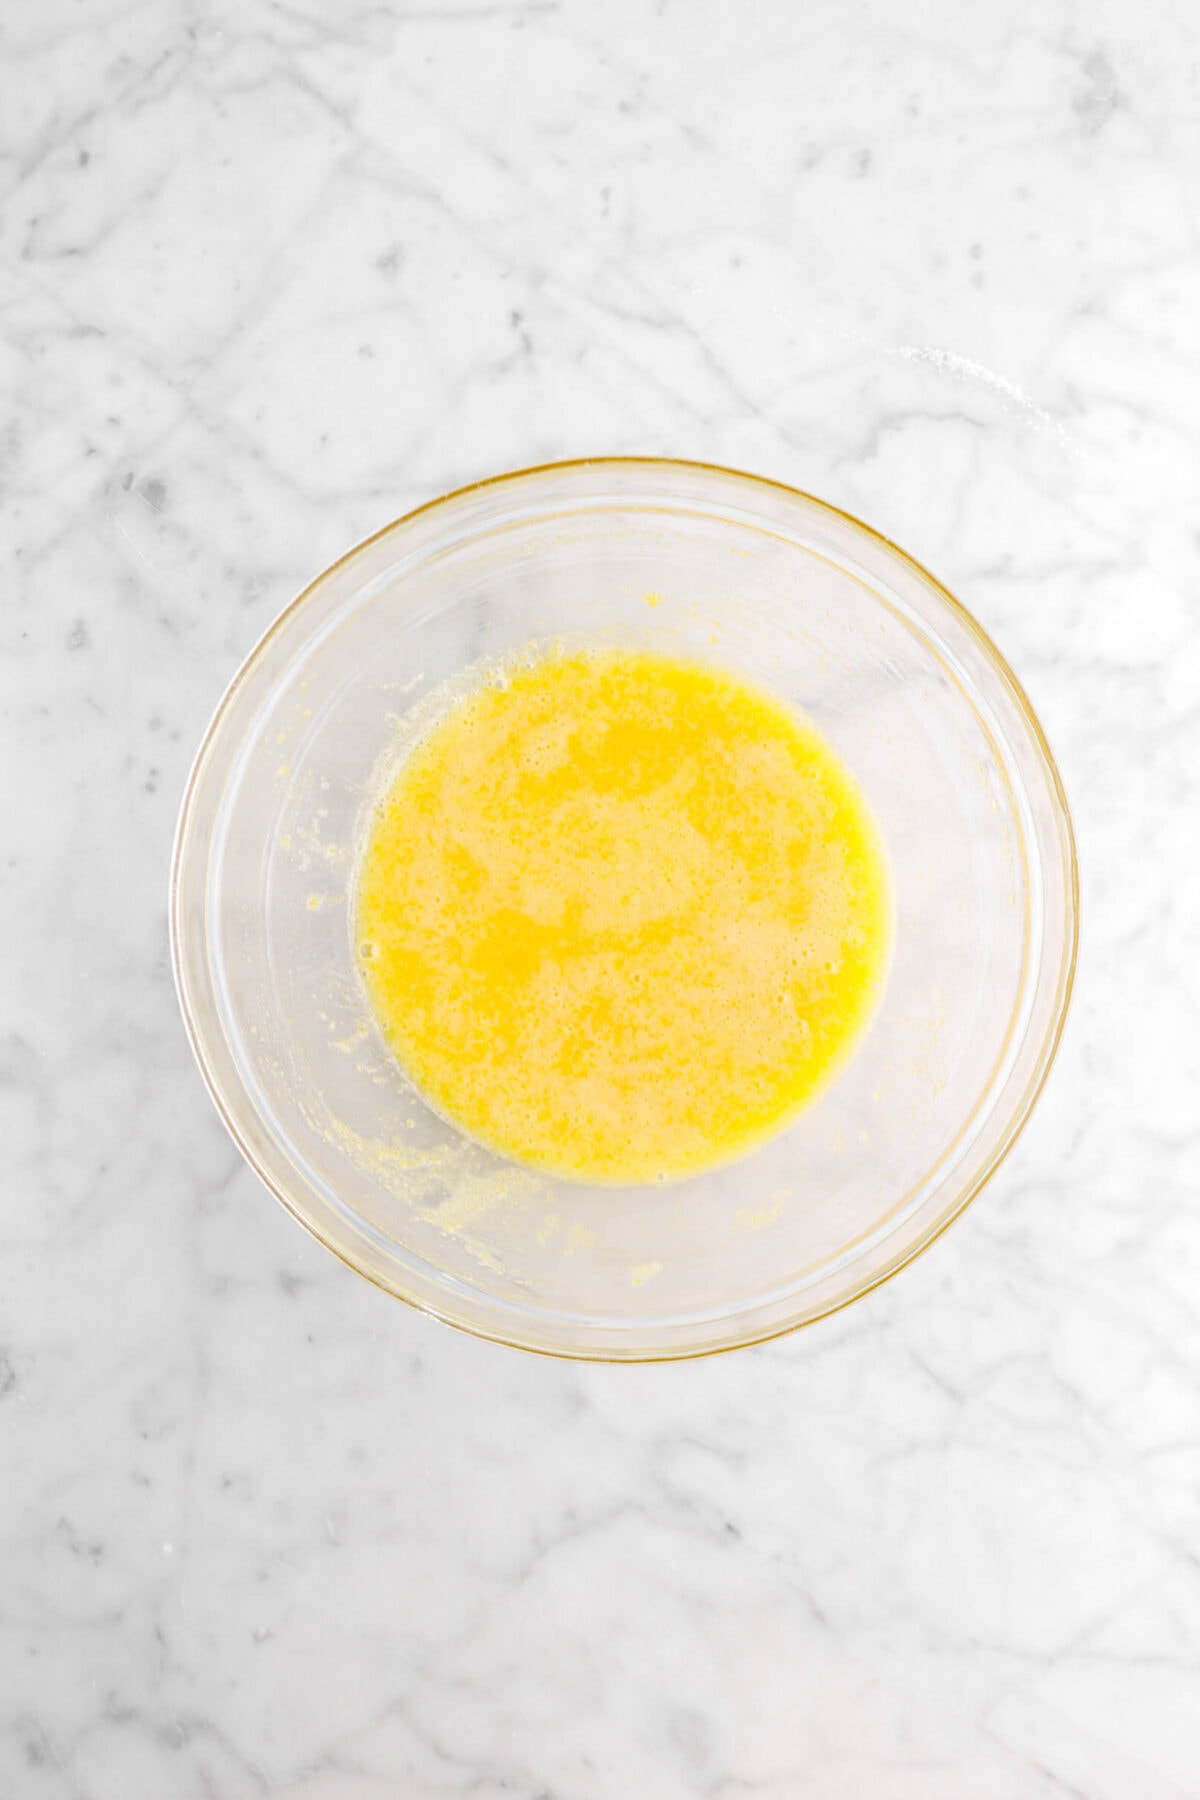 egg yolks and sugar stirred together